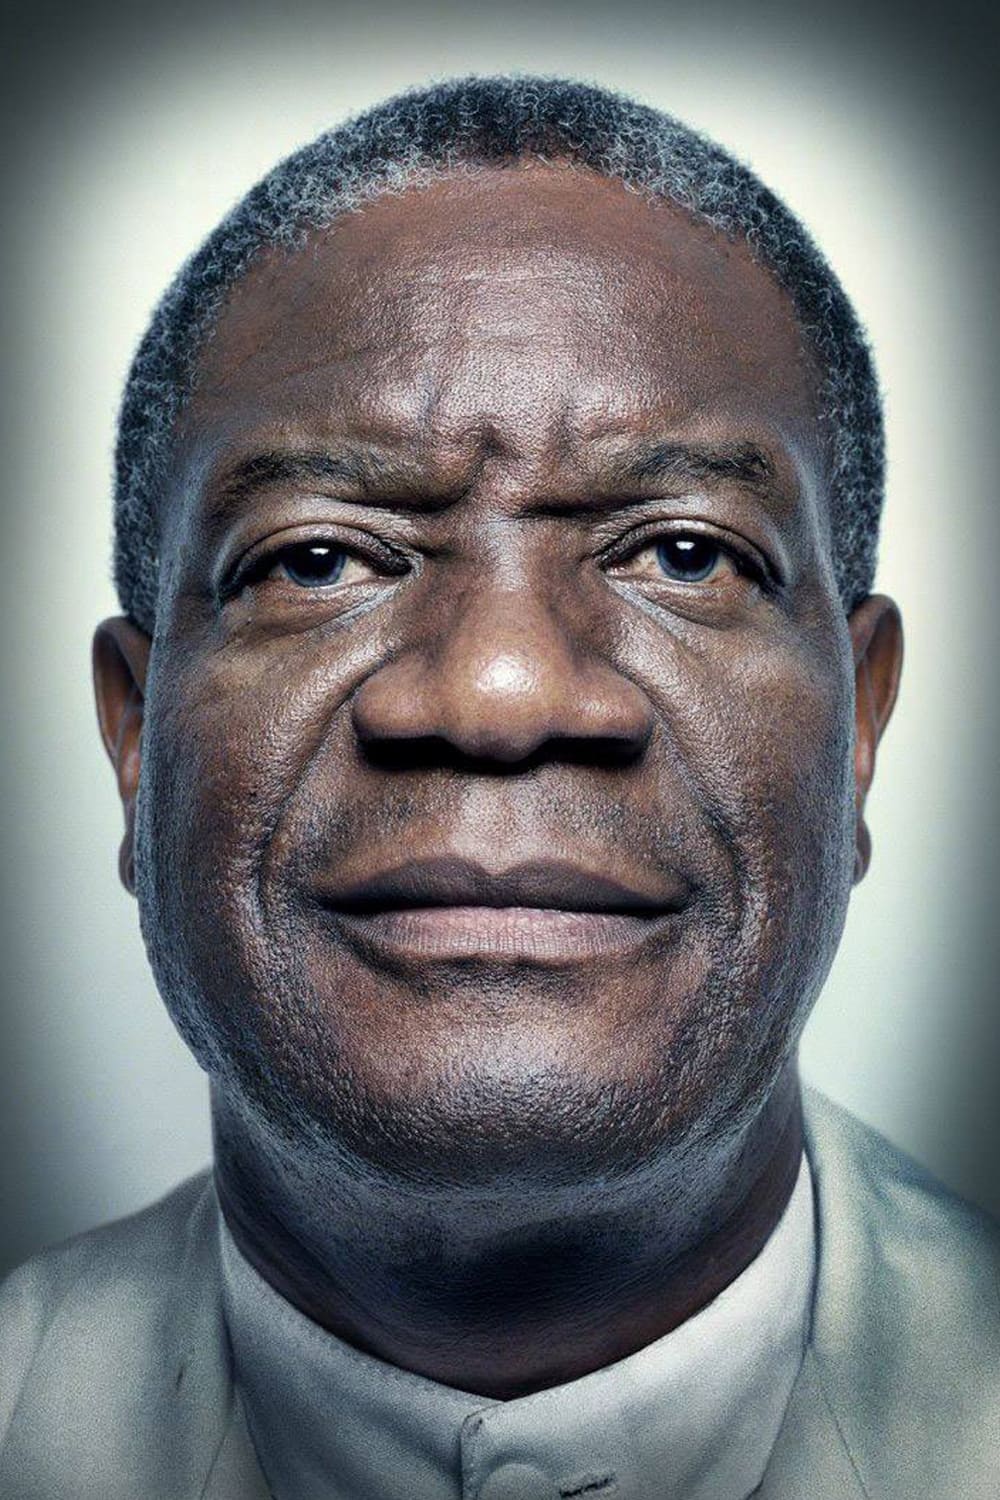 Denis Mukwege Mukengere